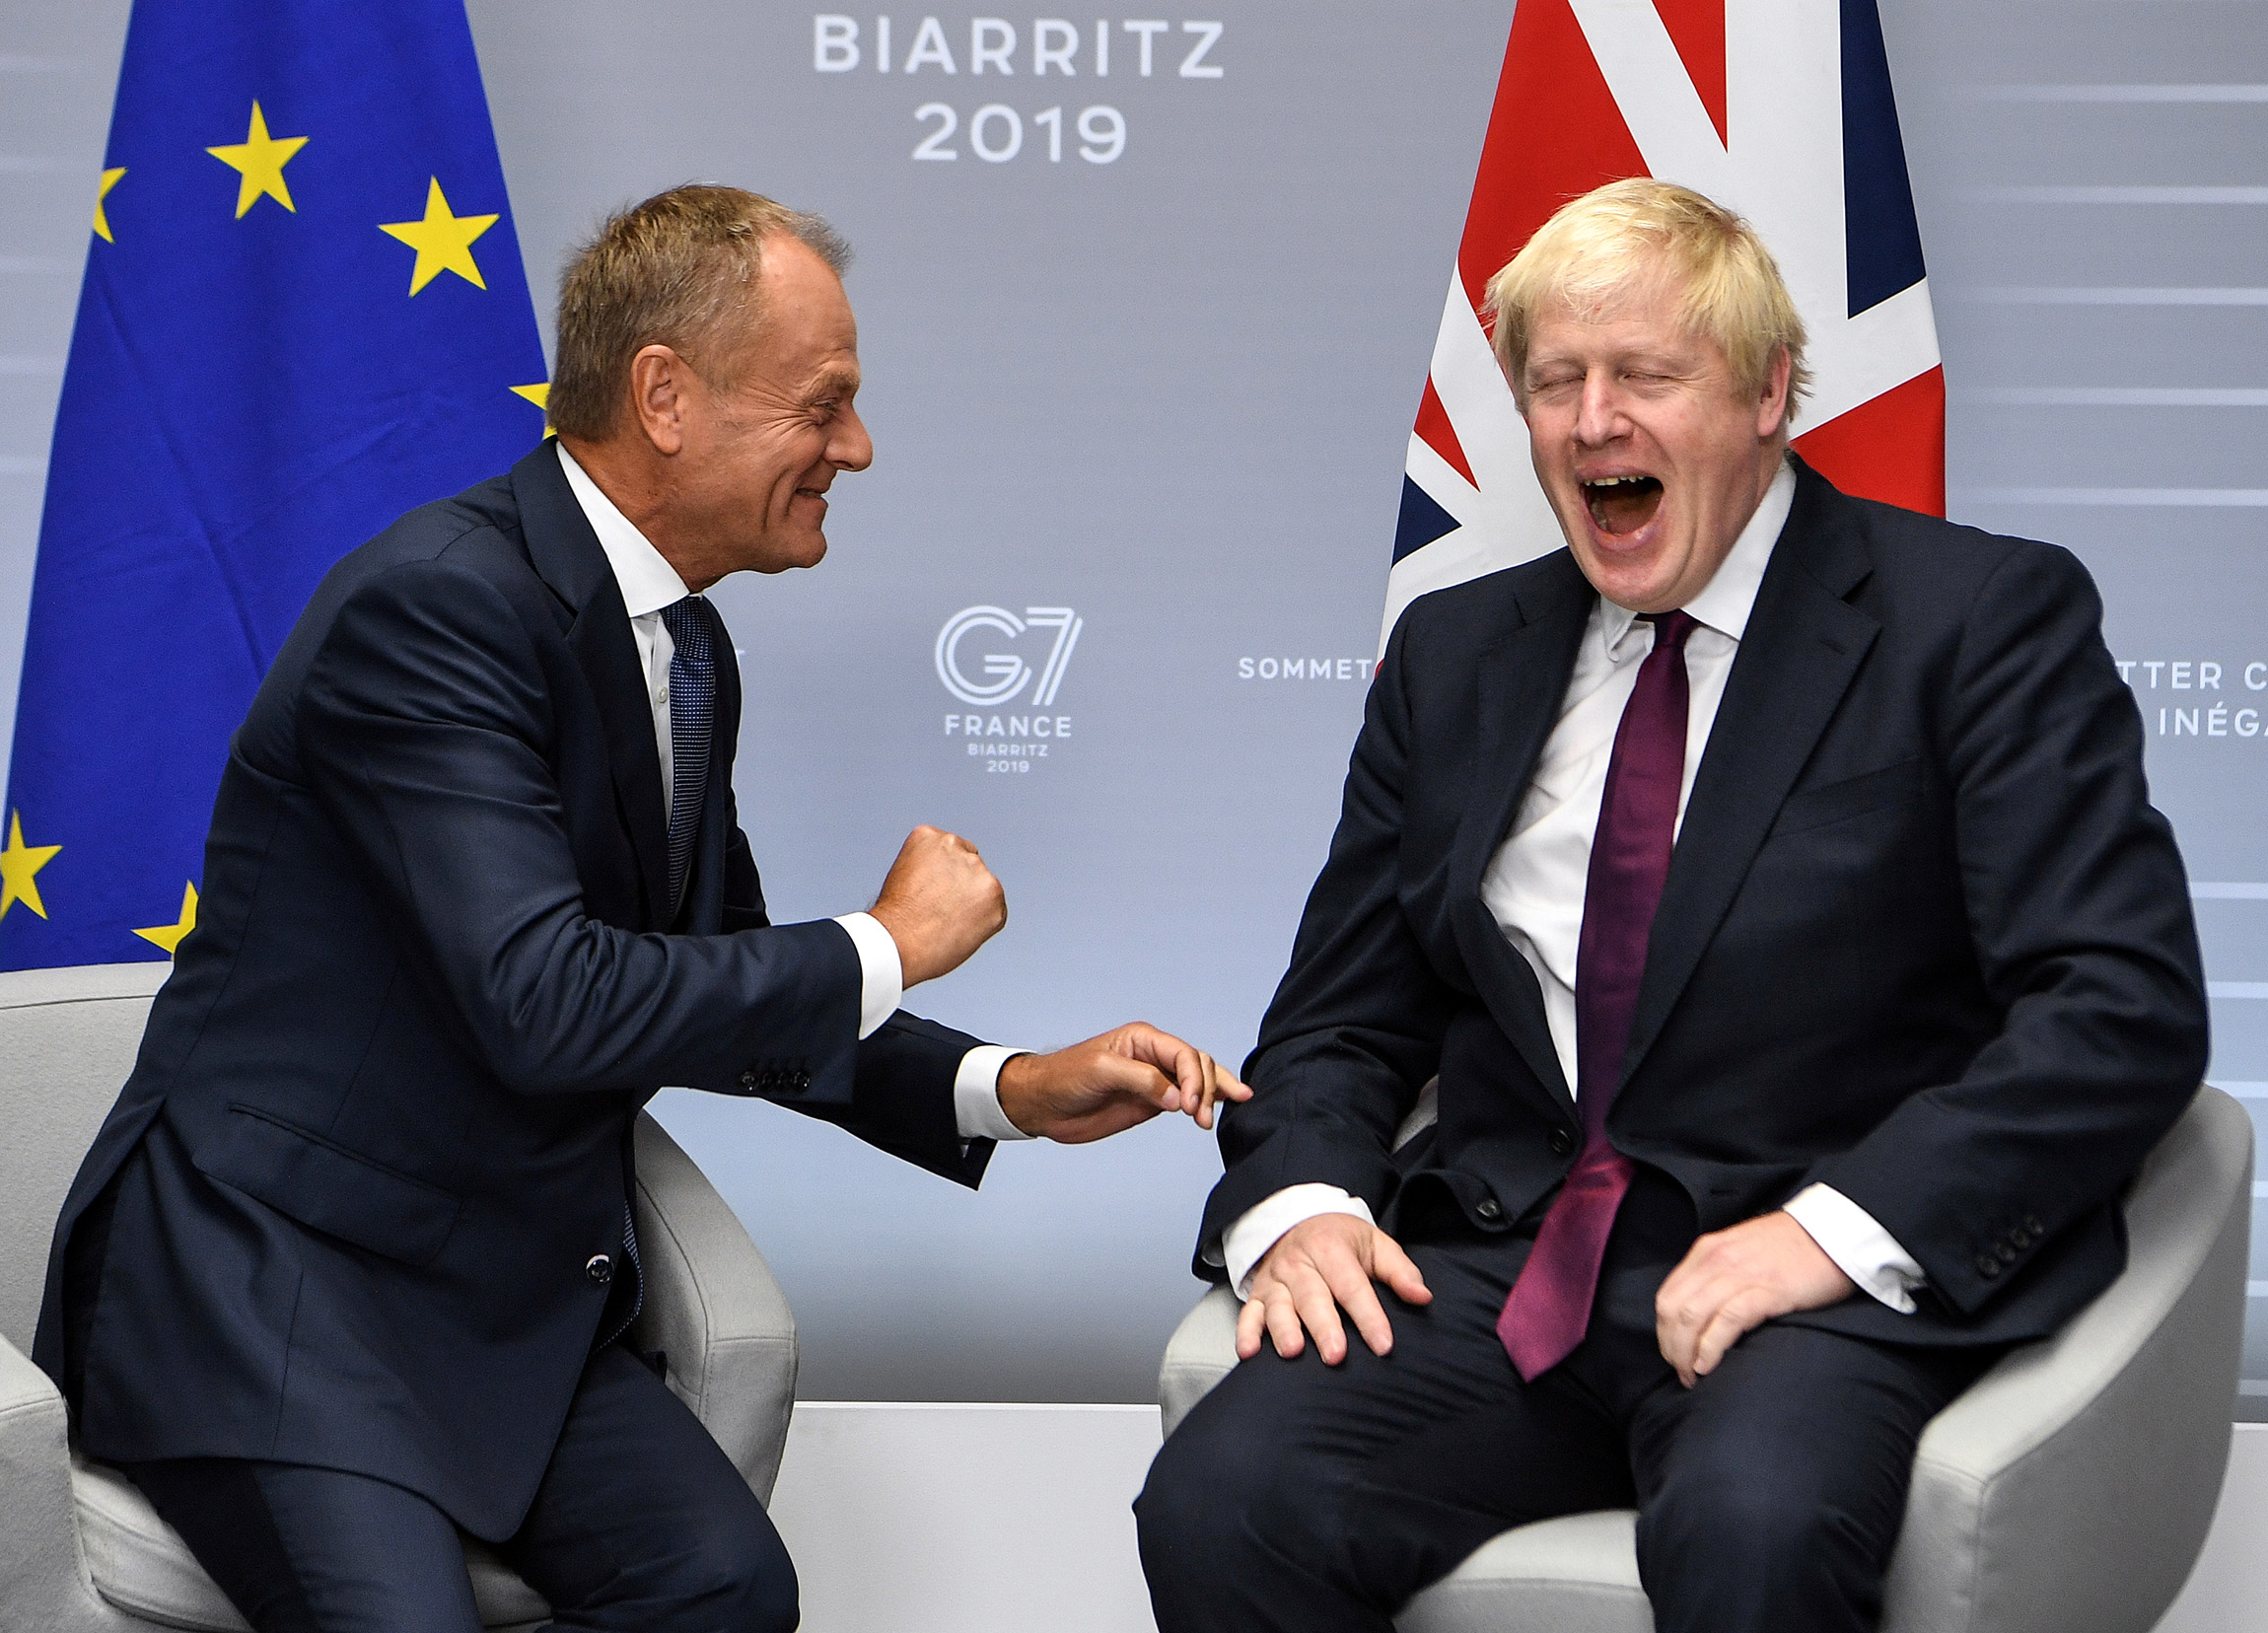 Премьер-министр Великобритании Борис Джонсон (справа) и председатель ЕС Дональд Туск во время саммита G7, 24 августа 2019 года. Биарриц, Франция
